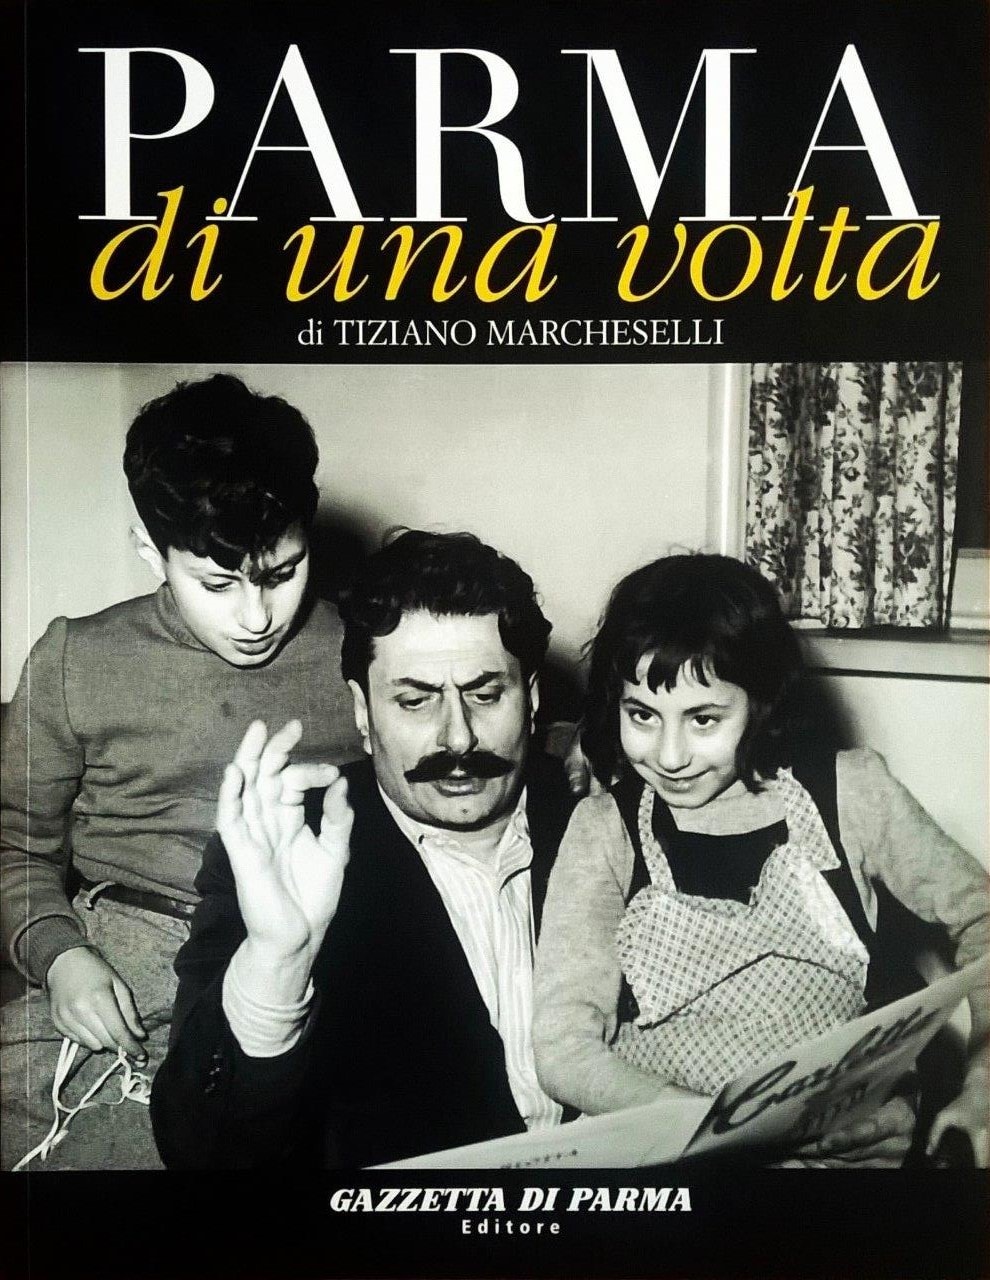 Tiziano Marcheselli, Parma di una volta - volume decimo, Parma, Gazzetta di Parma Editore (Grafiche Step Editrice), 2007